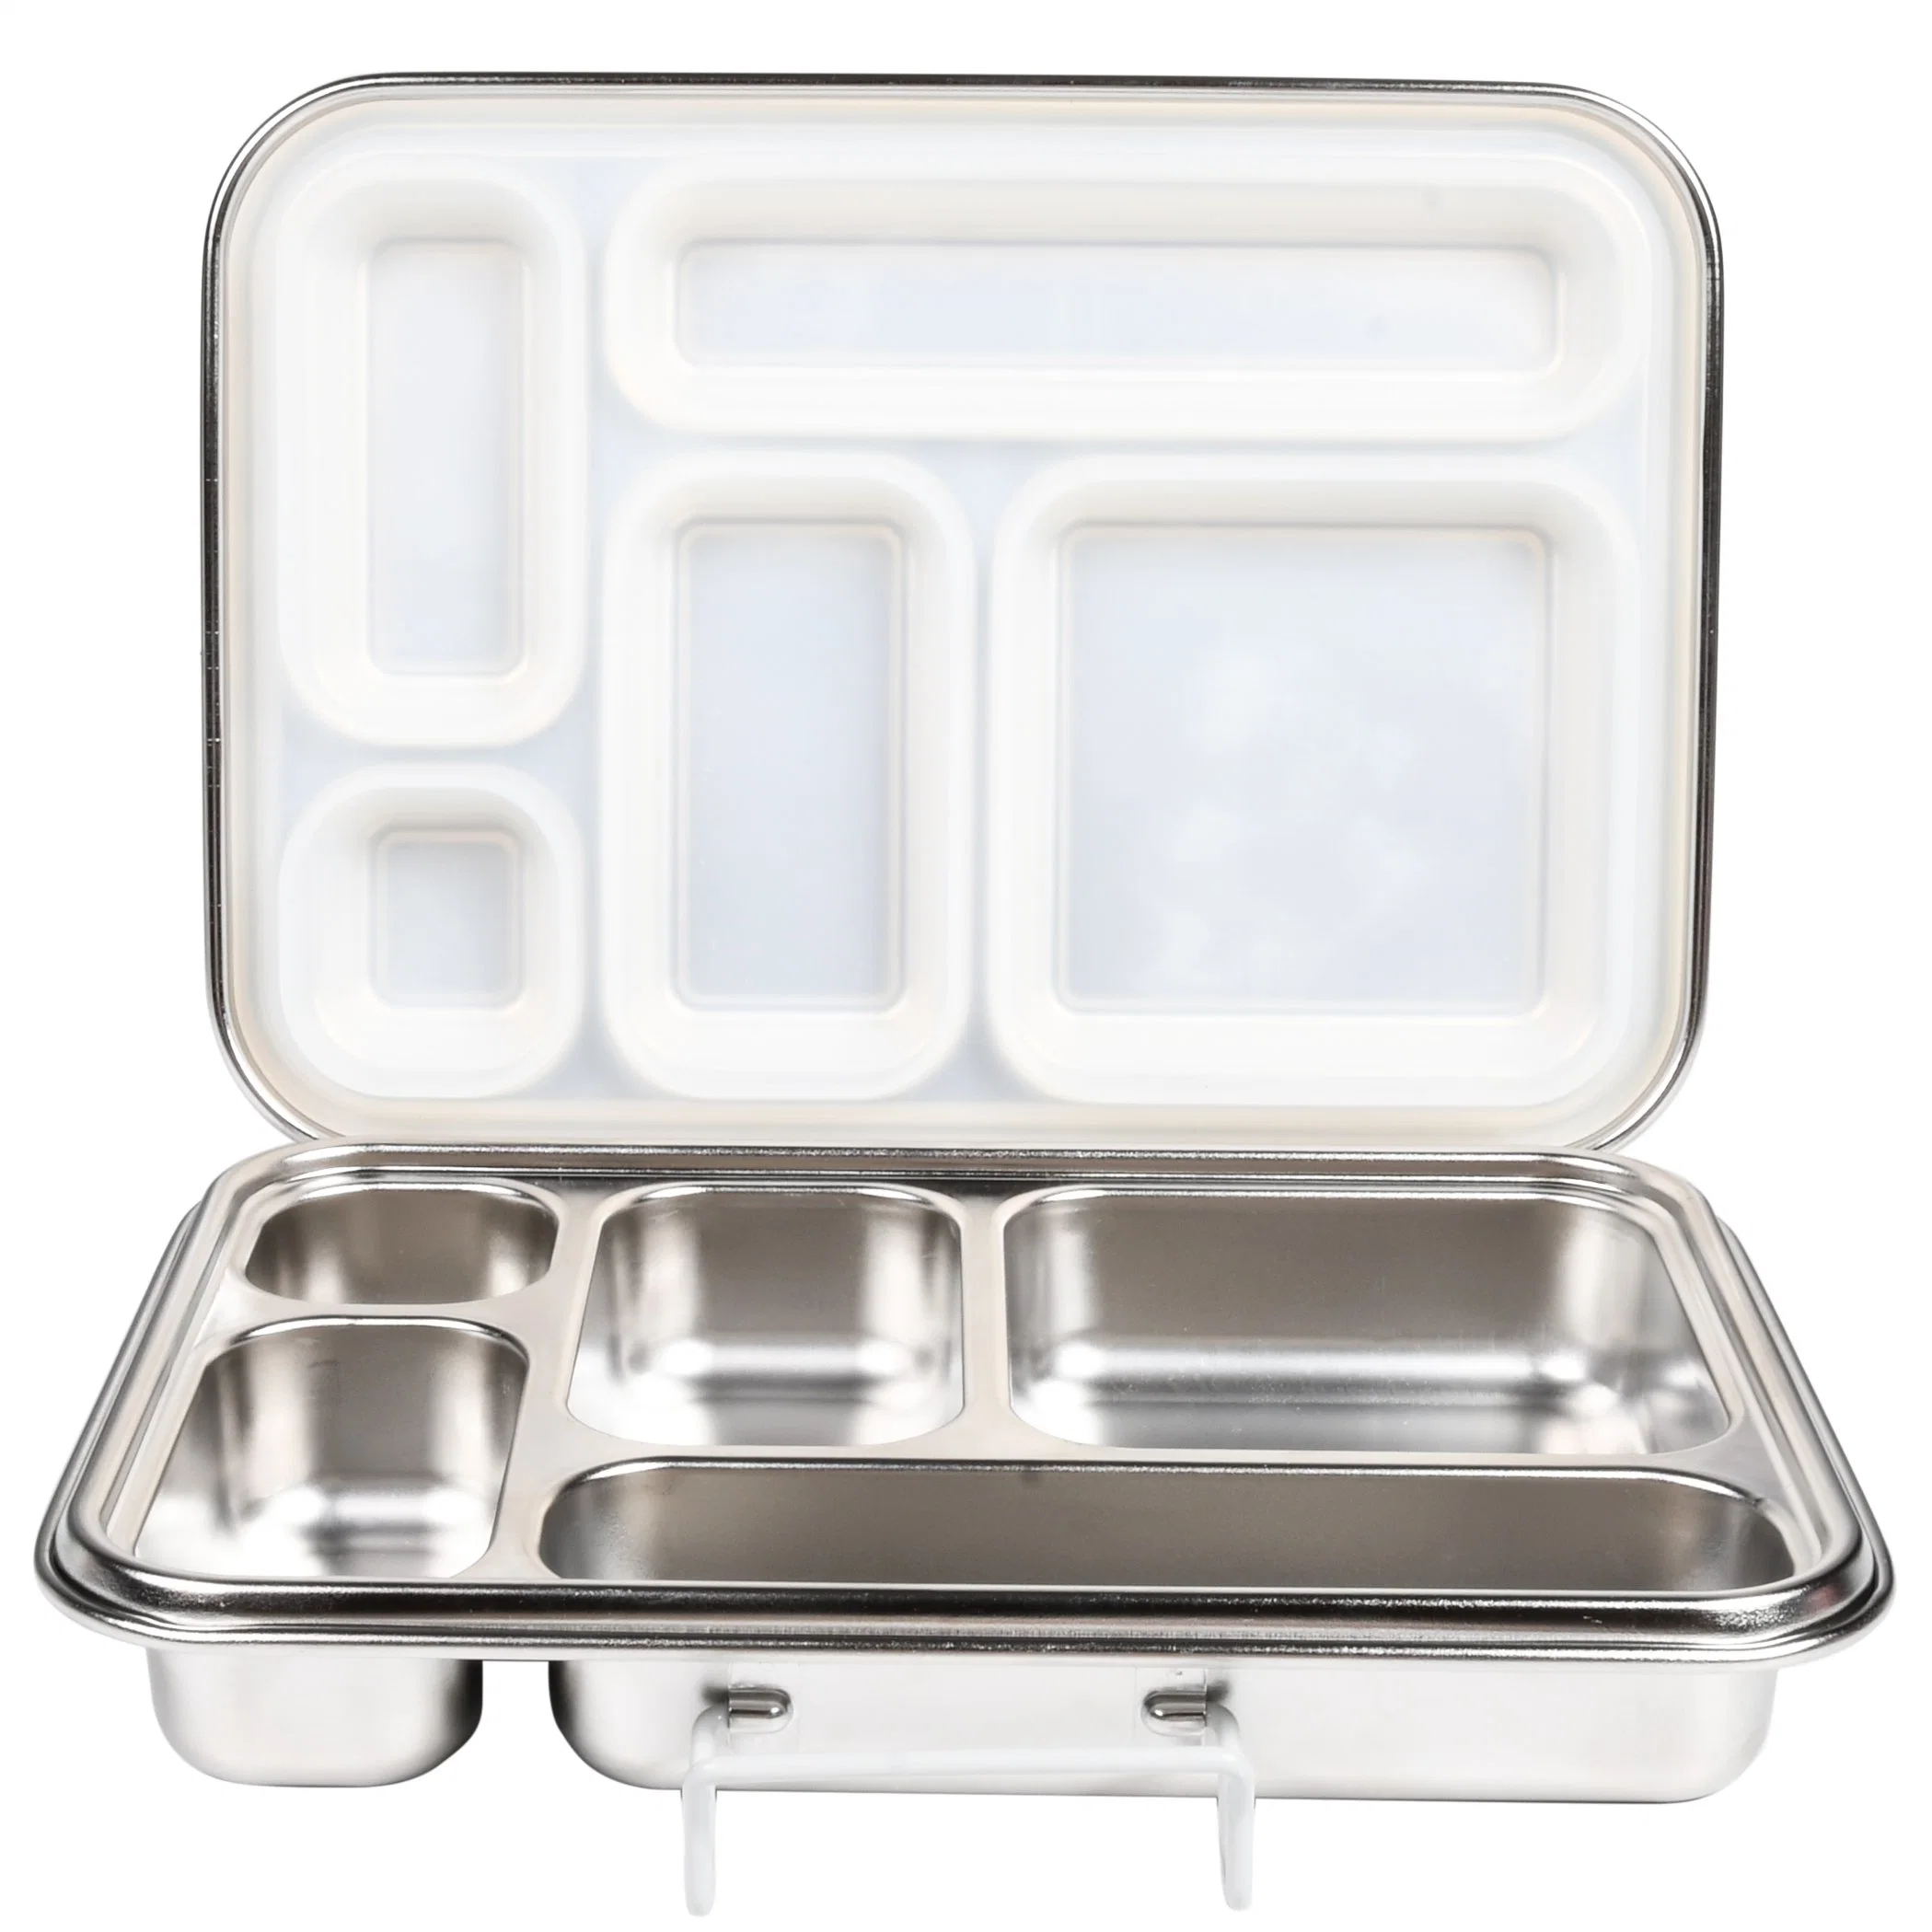 Aohea высокой емкости контейнеры для еды Бенто ланч-бокс детский герметичная упакованный обед обед сублимации красителей в салоне Lunchbox, японский обед в салоне